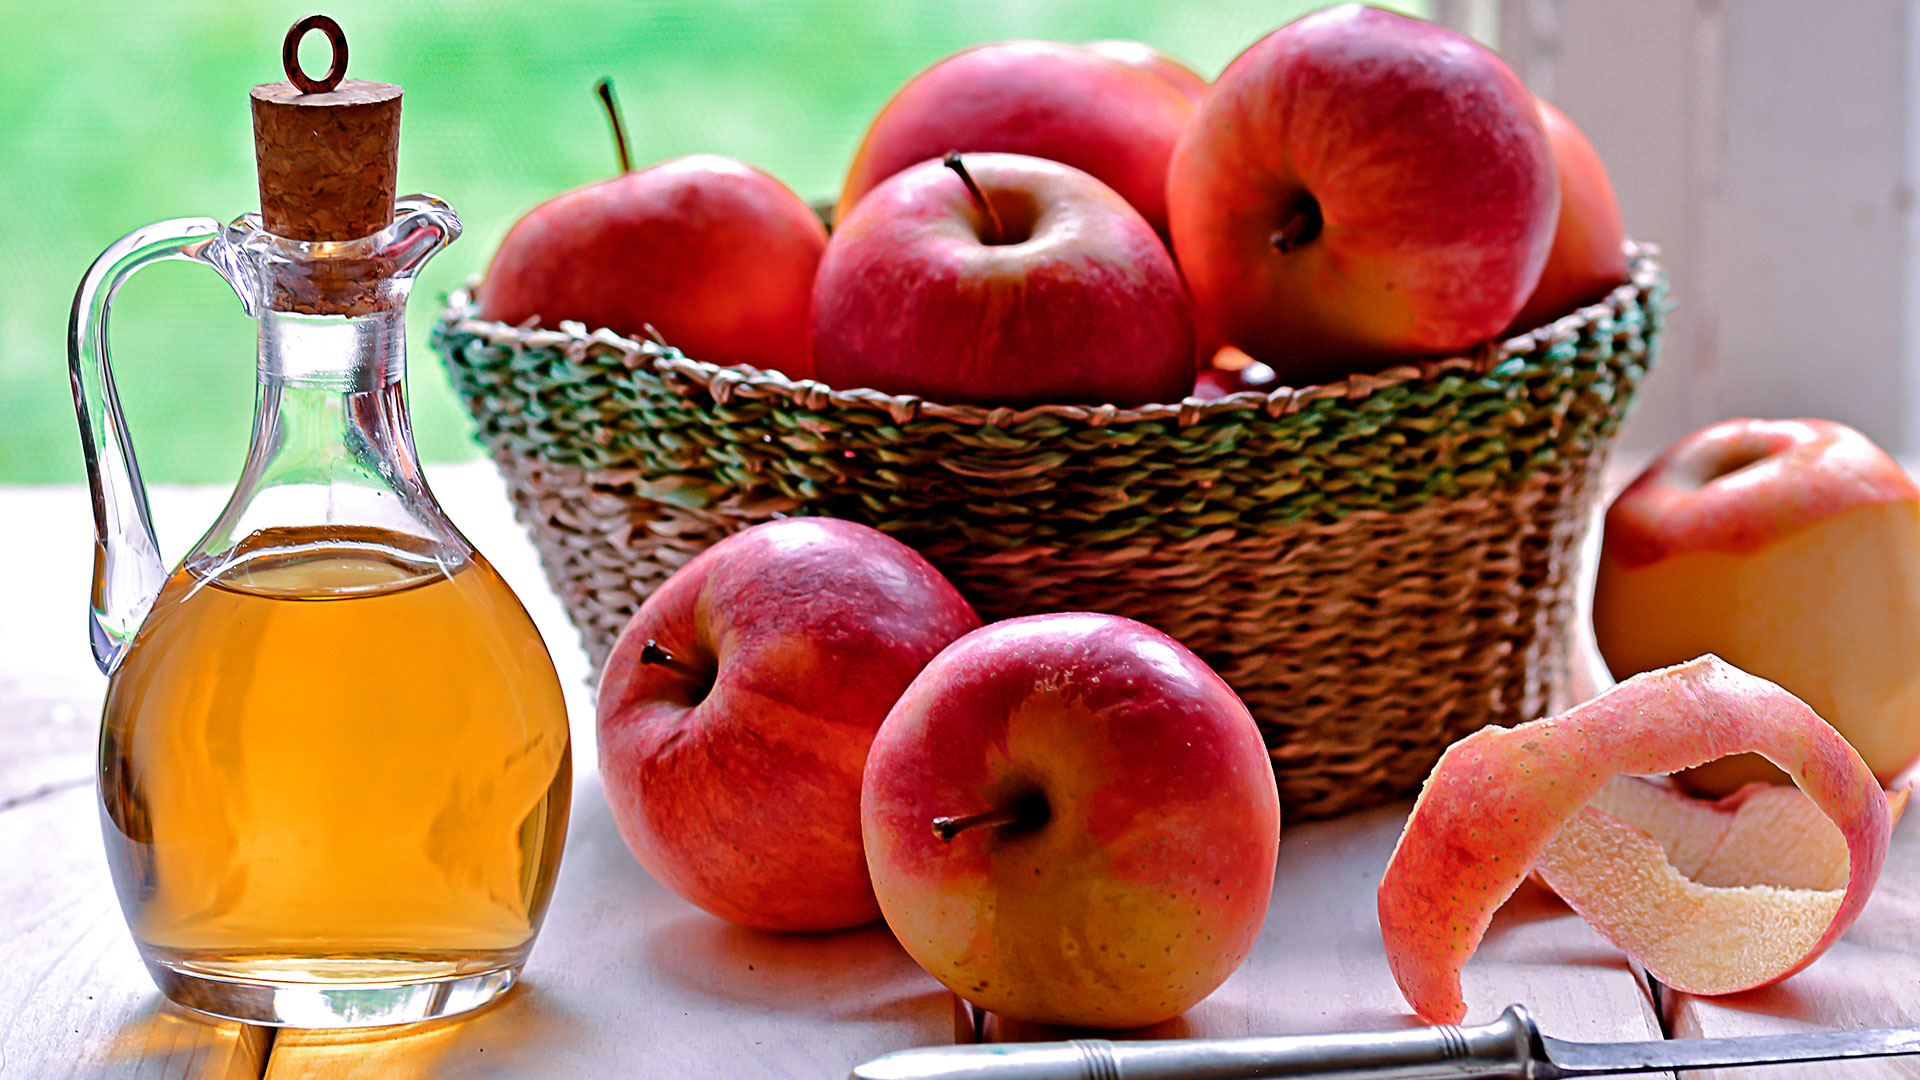 Ingerir demasiado vinagre de manzana u otro tipo de vinagre puede irritar y traer problemas digestivos (Gettyimages)